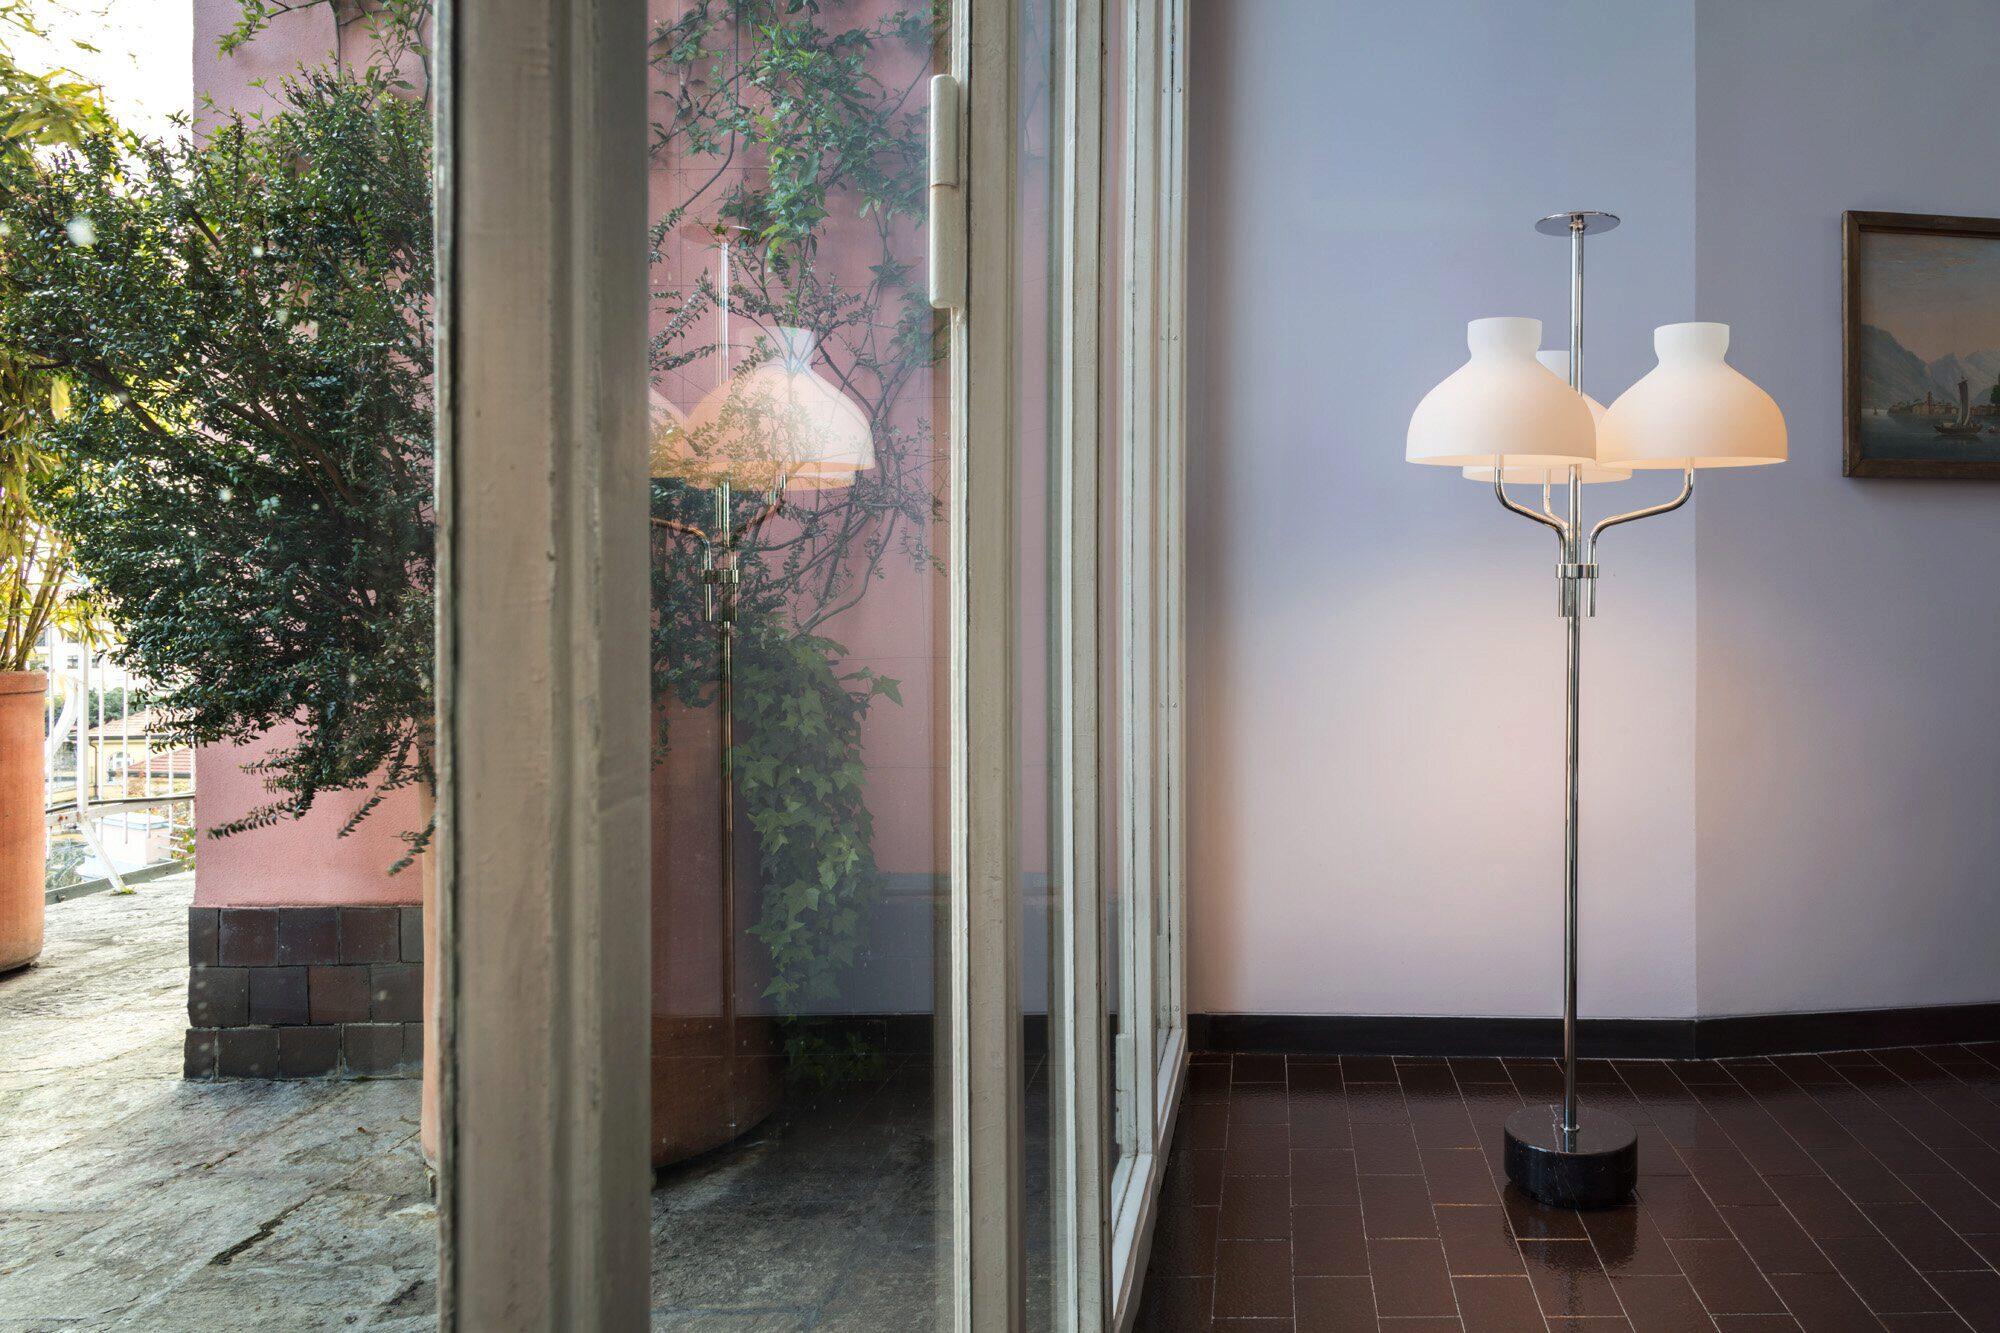 Ignazio Gardella 'Arenzano Tre Fiamme' Floor Lamp in White Marble and Chrome.

Ignazio Gardella was one of the leading figures in Italian twentieth-century architecture. A graduate of the Politecnico di Milano, he founded Azucena with Luigi Caccia